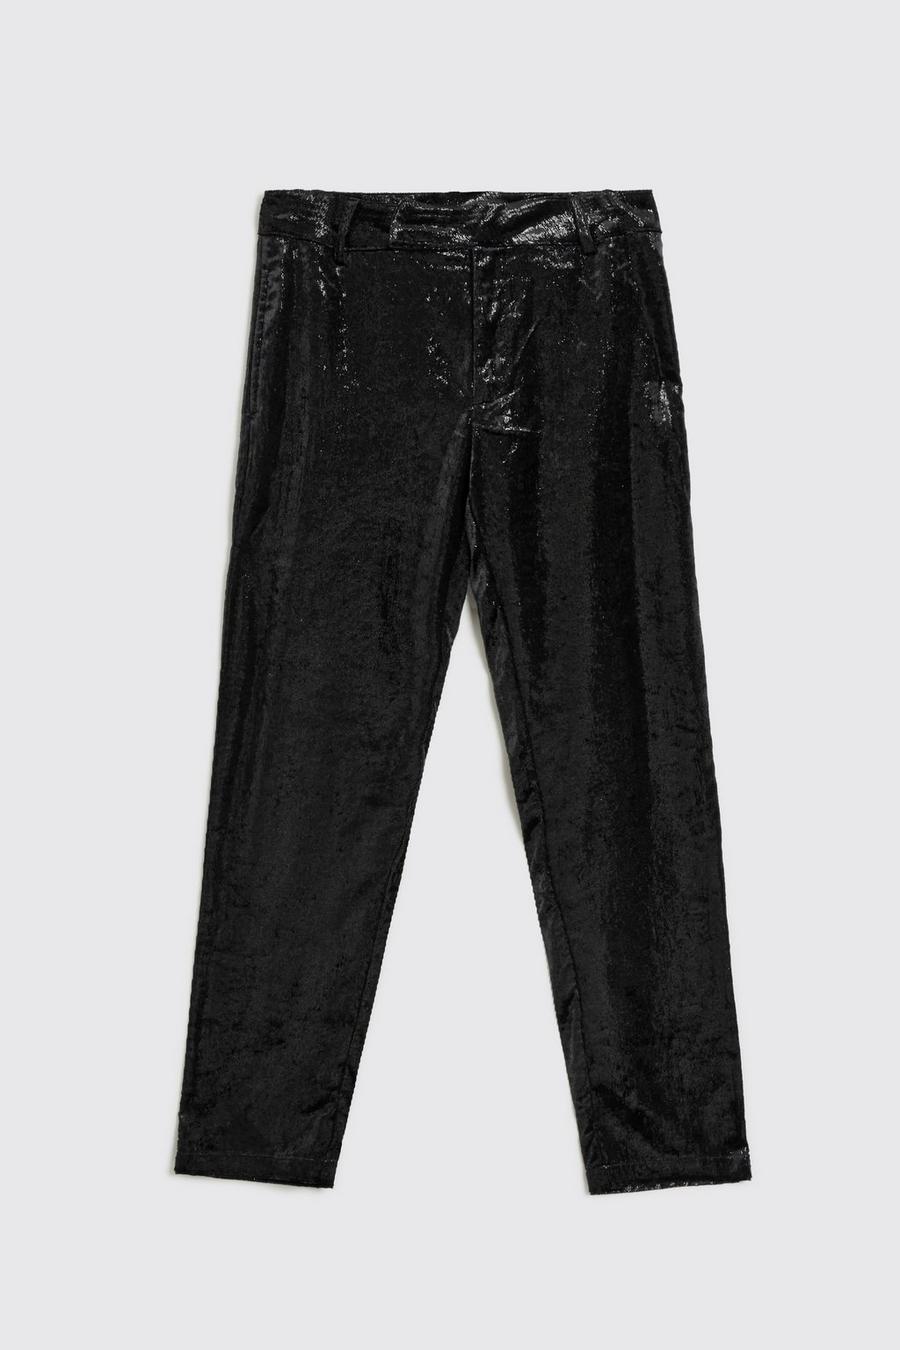 Pantaloni Slim Fit metallizzati a effetto luccicante, Black negro